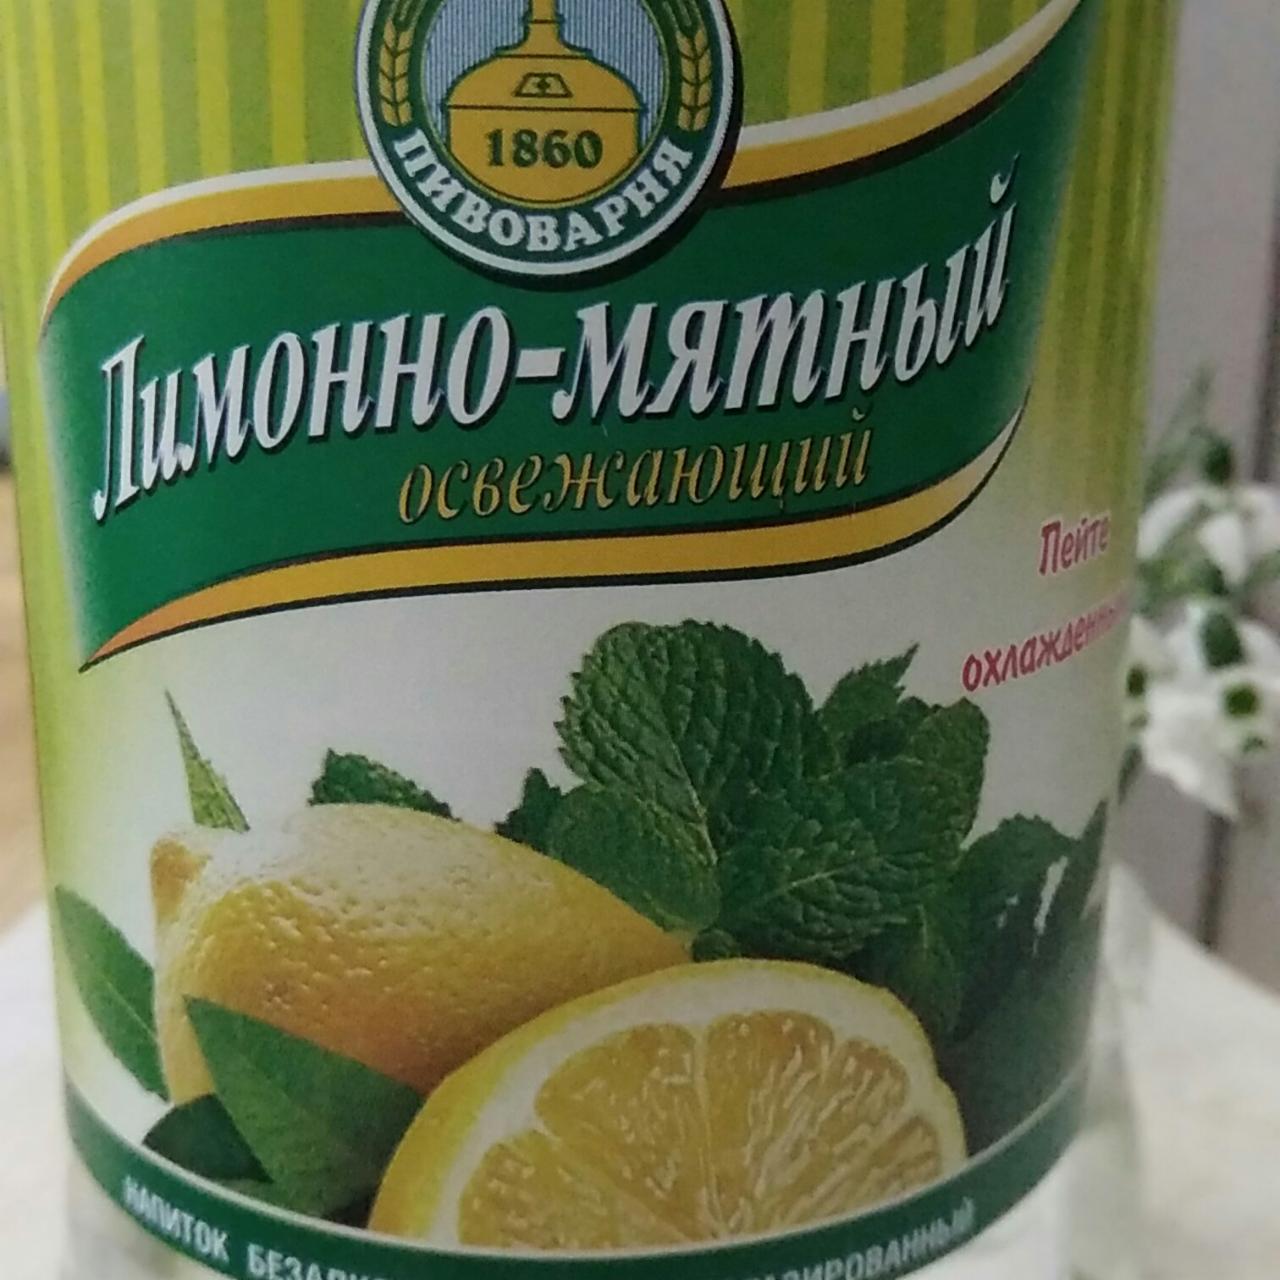 Фото - Напиток лимонно-мятный Первая пивоварня ЗАО Бендерский пивоваренный завод